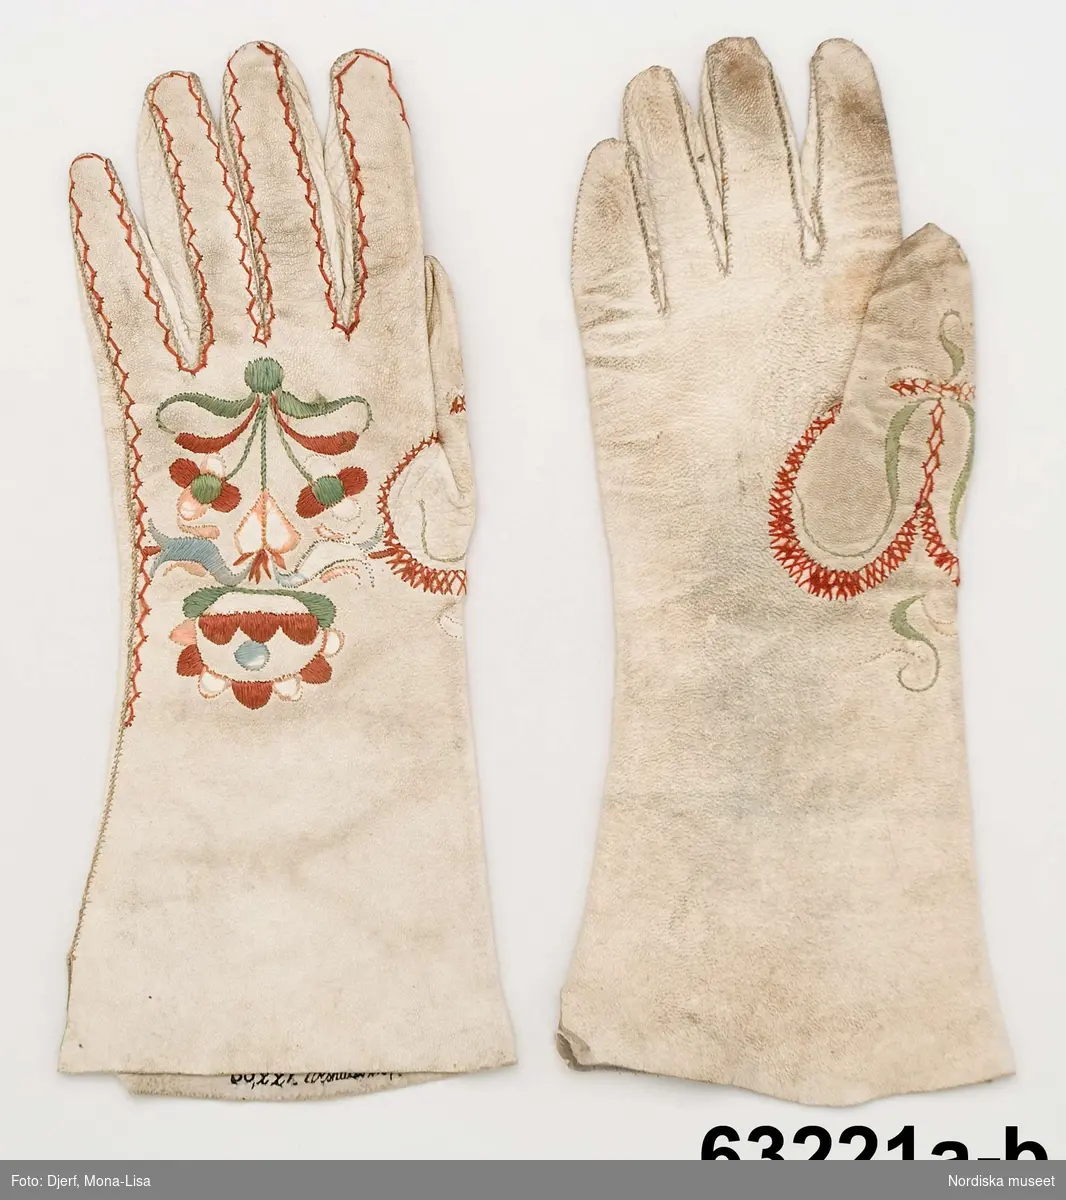 Handskar - Nordiska museet / DigitaltMuseum